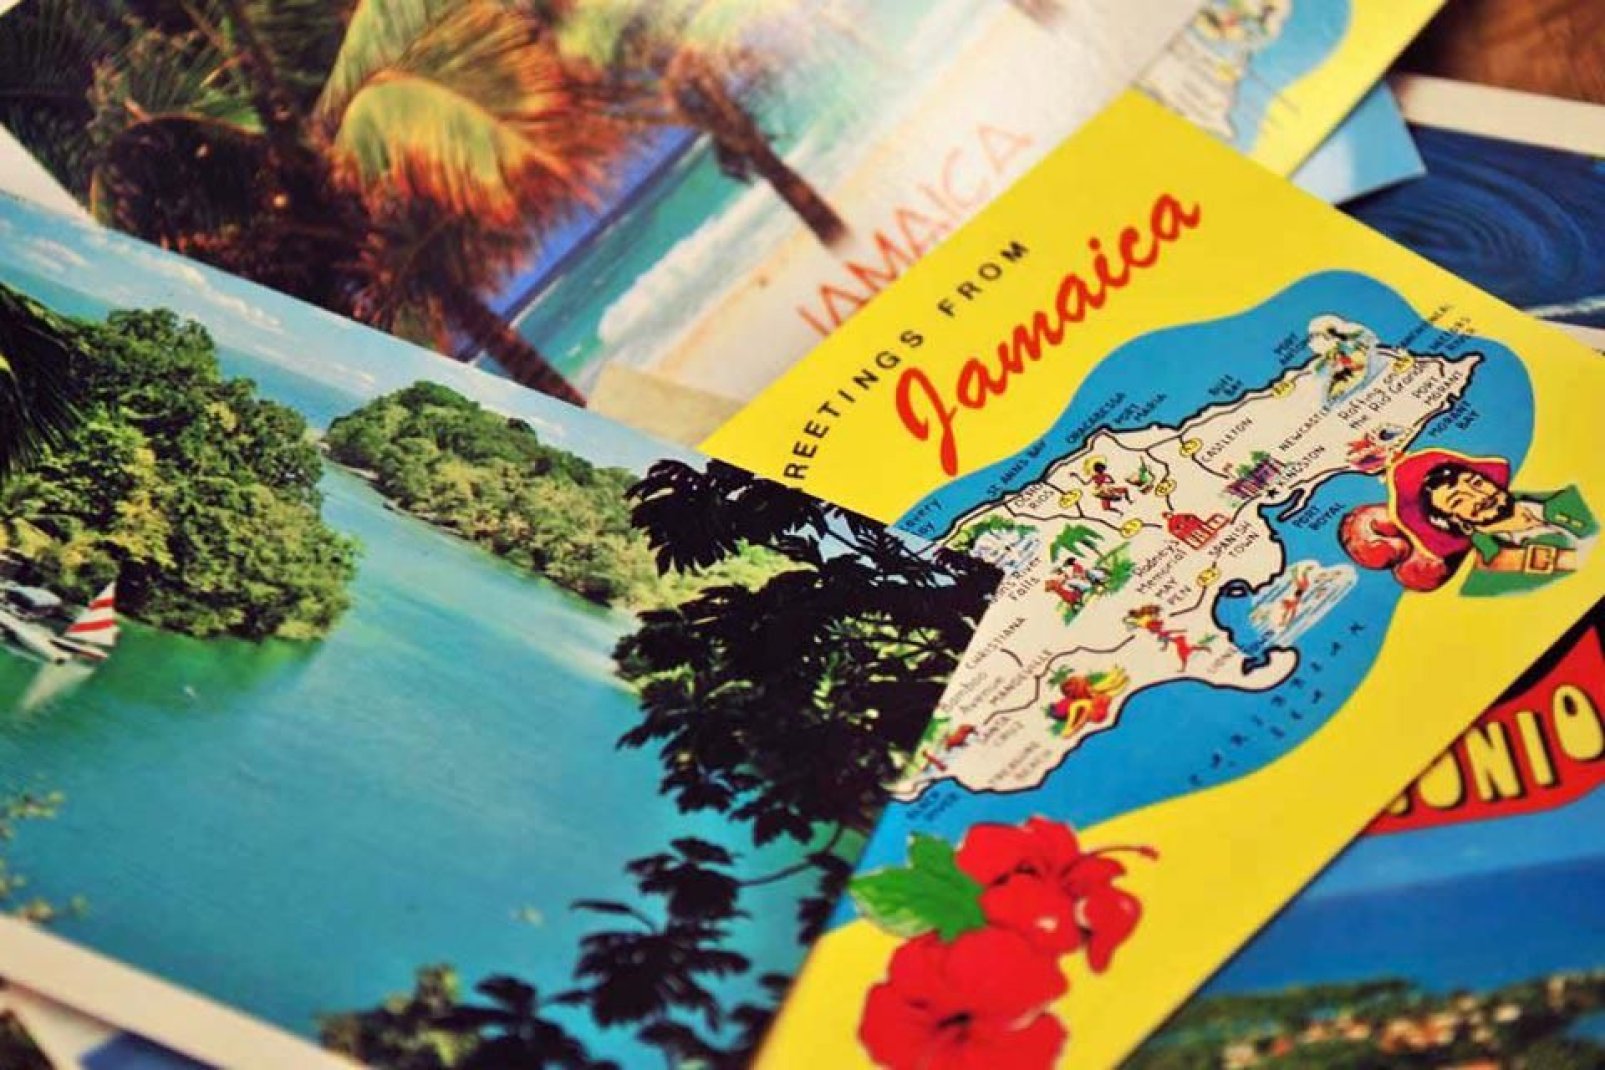 Port Antonio ist eine bedeutende Touristendestination auf Jamaika.